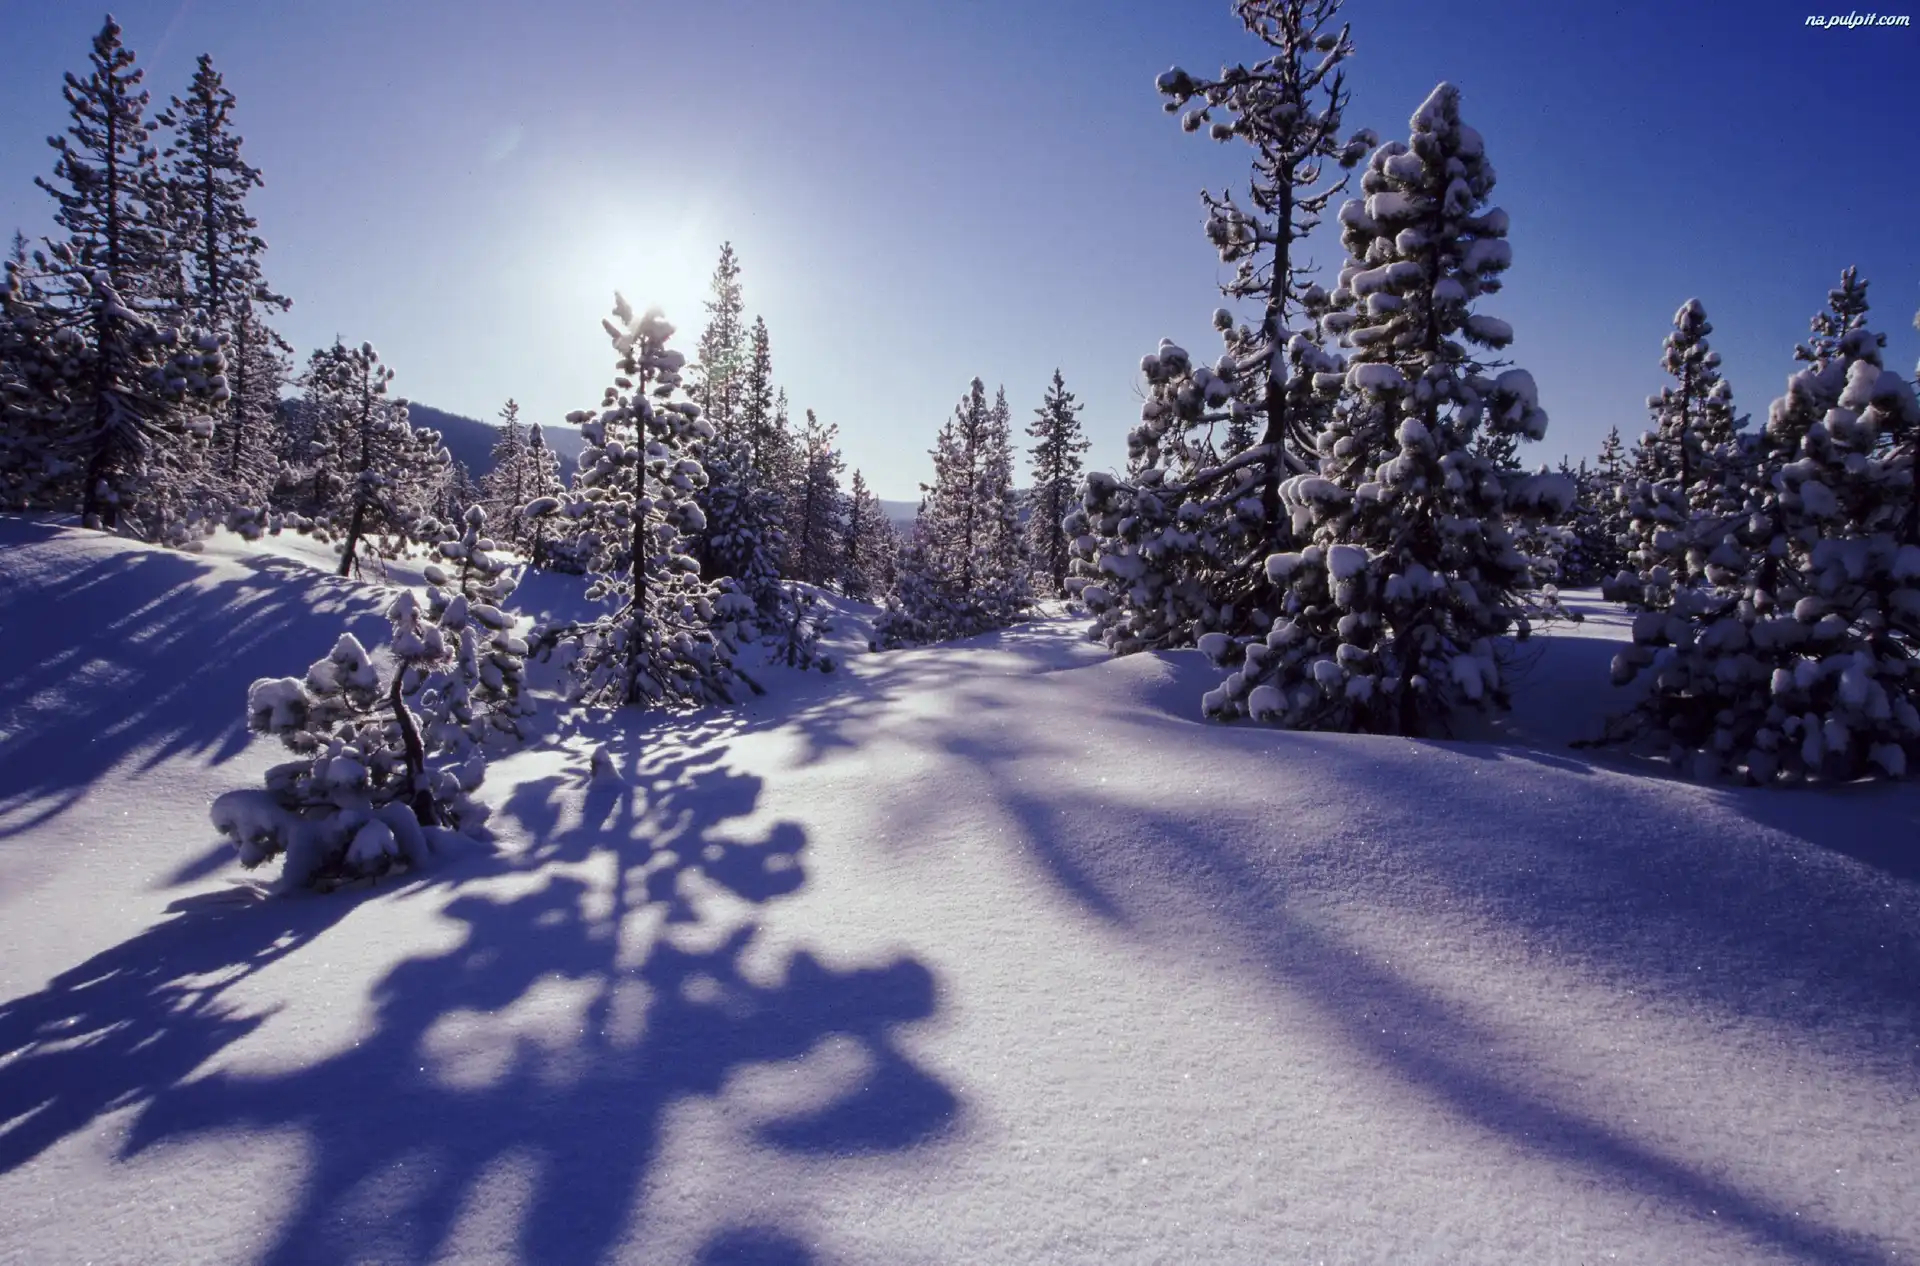 Słońca, Śniegiem, Pokryte, Drzewka, Promienie